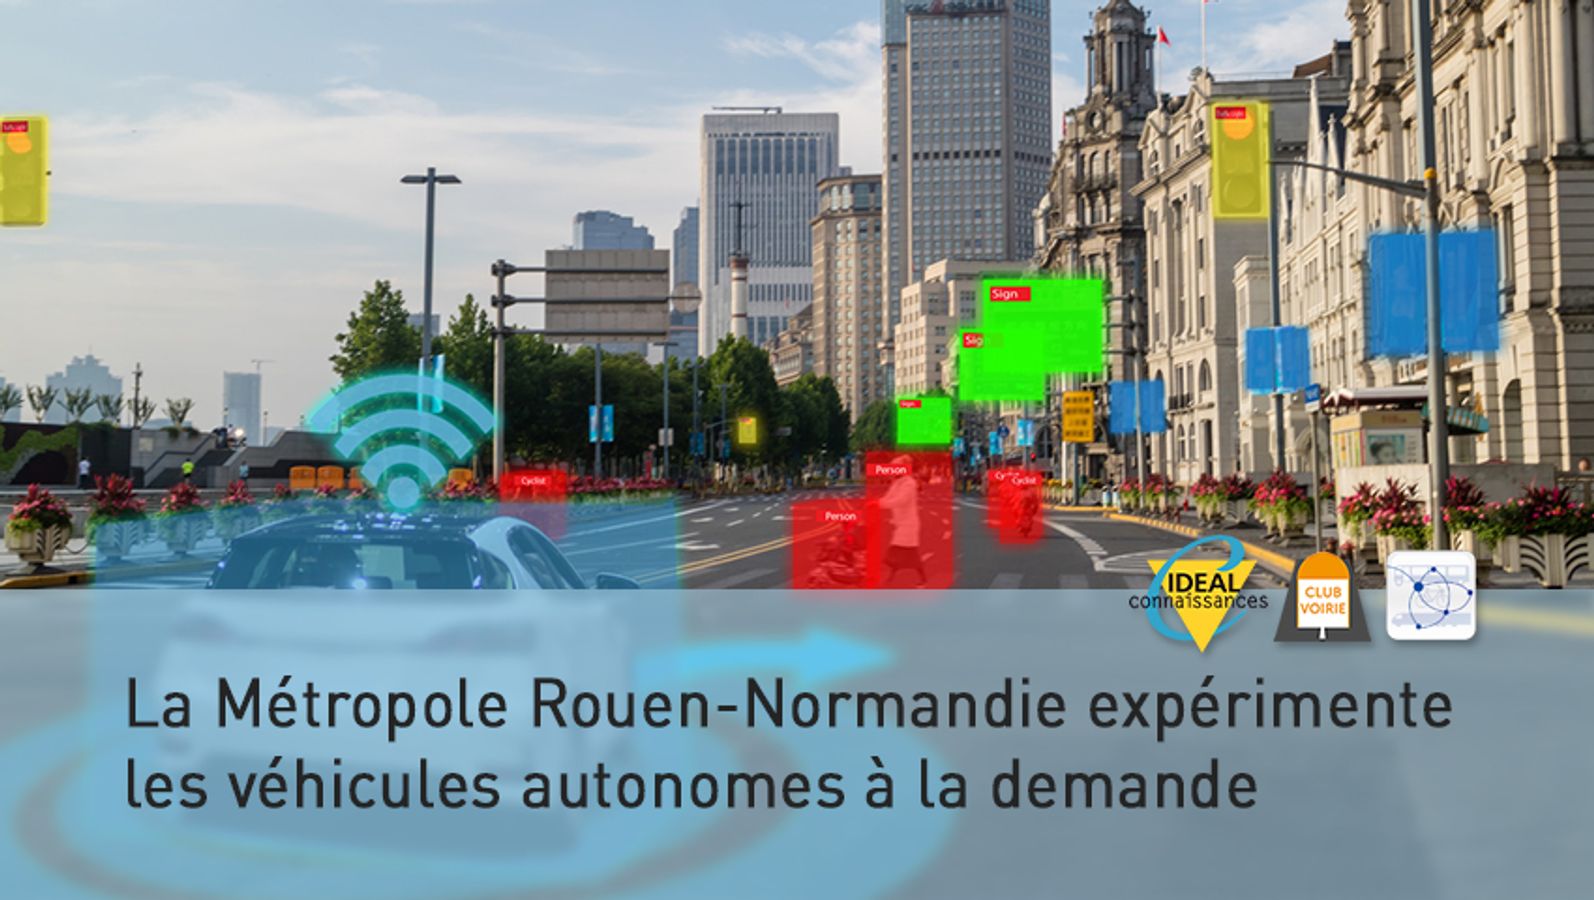 La Métropole Rouen-Normandie expérimente les véhicules autonomes à la demande